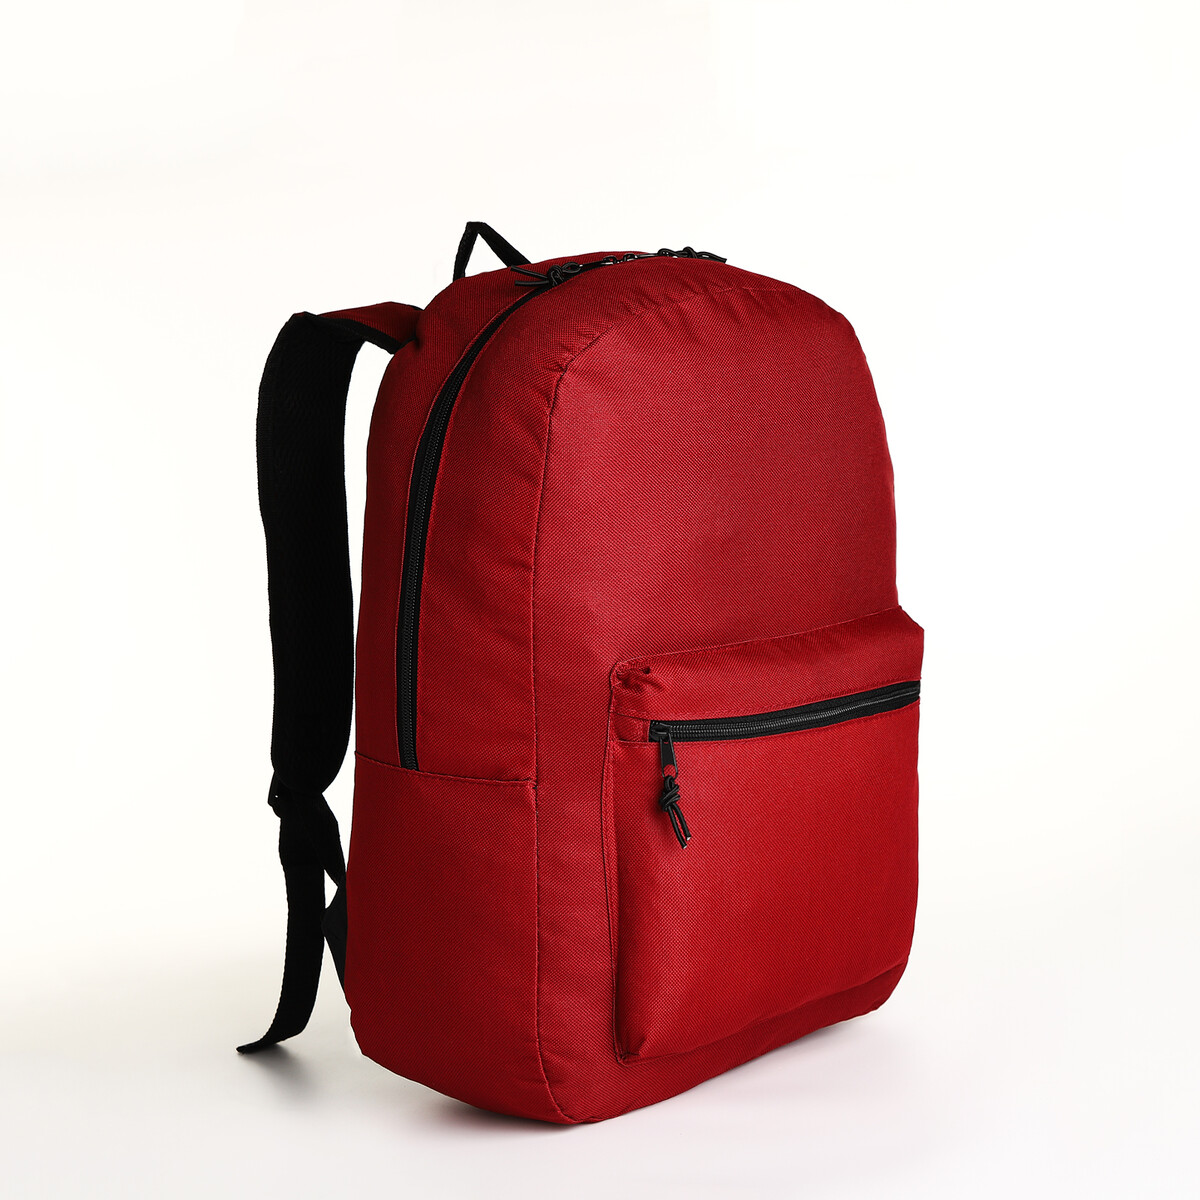 Рюкзак молодежный на молнии, наружный карман, цвет бордовый pixel bag рюкзак с led дисплеем pixel max red line бордовый